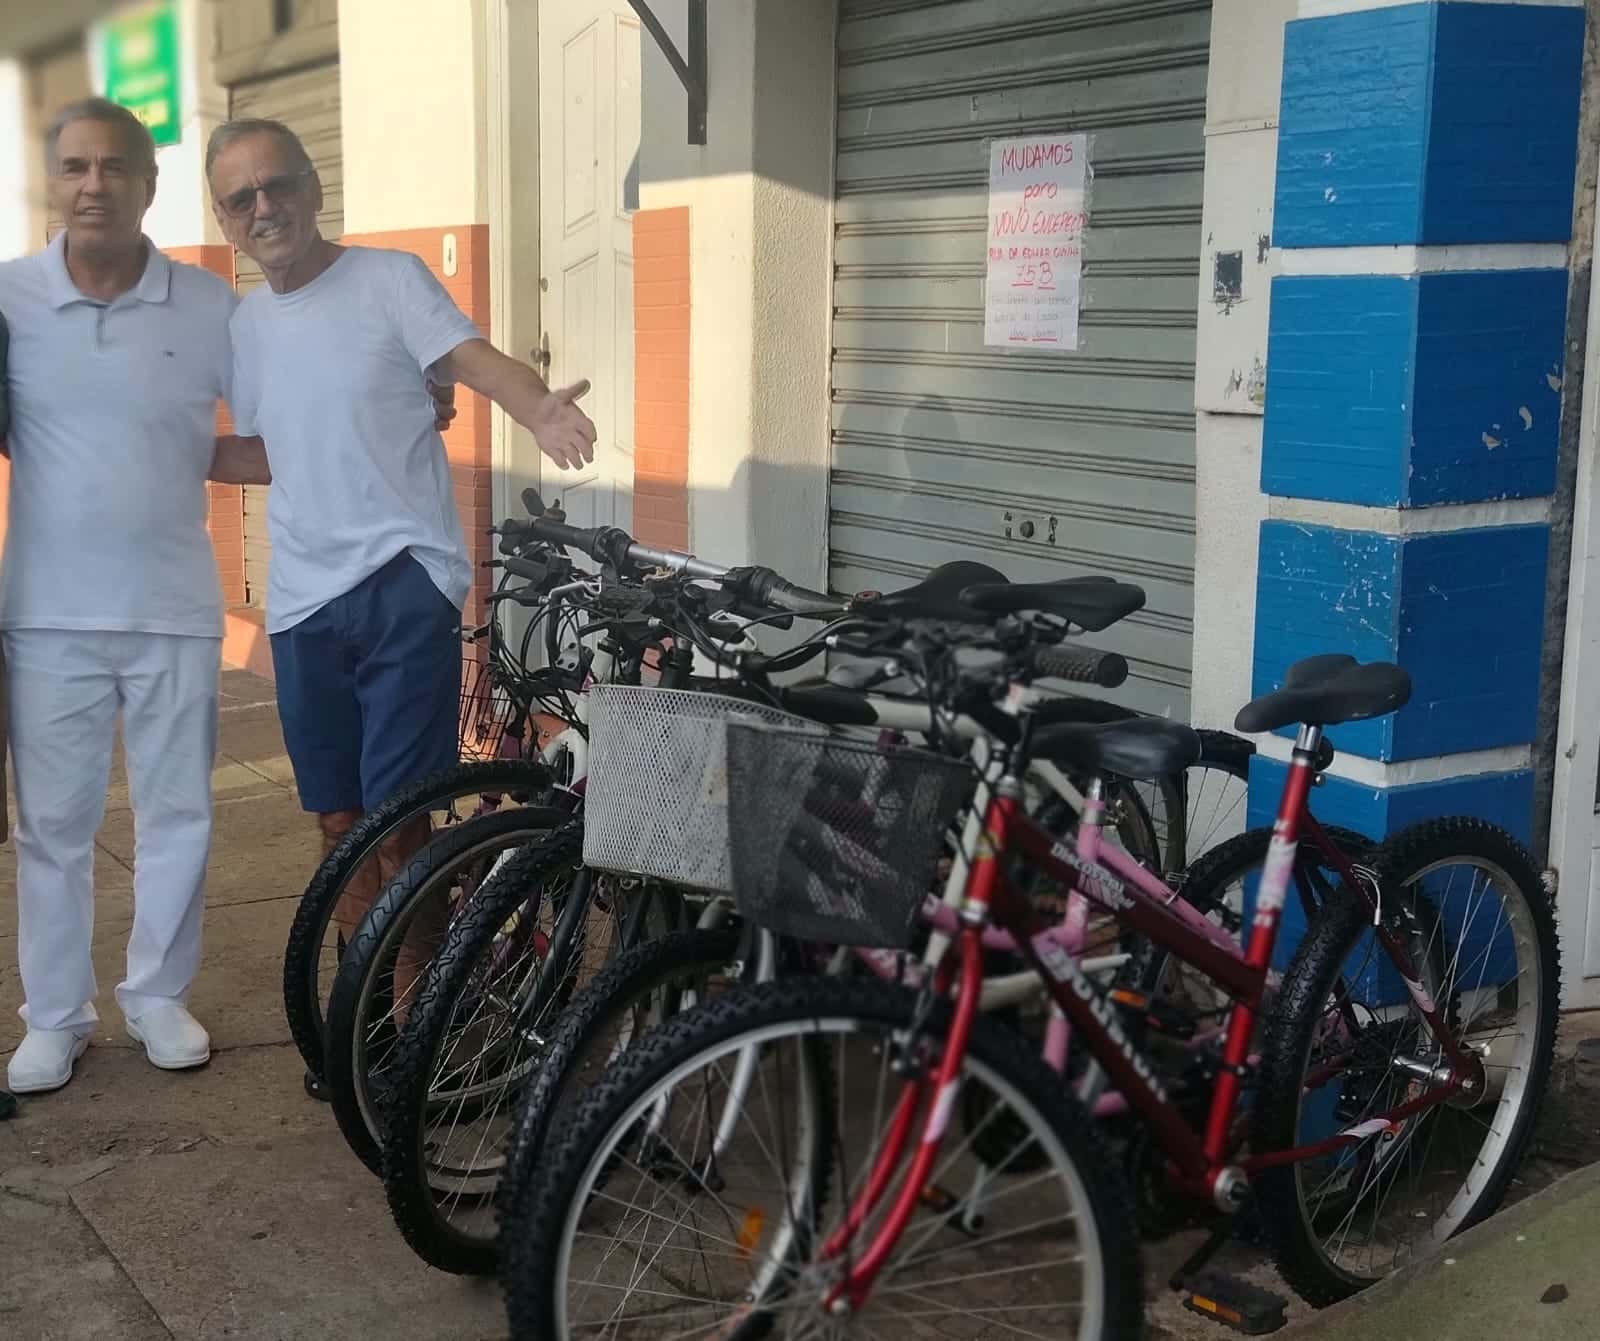 Agência ALESC  SESSÃO SOLENE - Homenagem aos grupos que incentivam a  qualidade de vida através das bicicletas